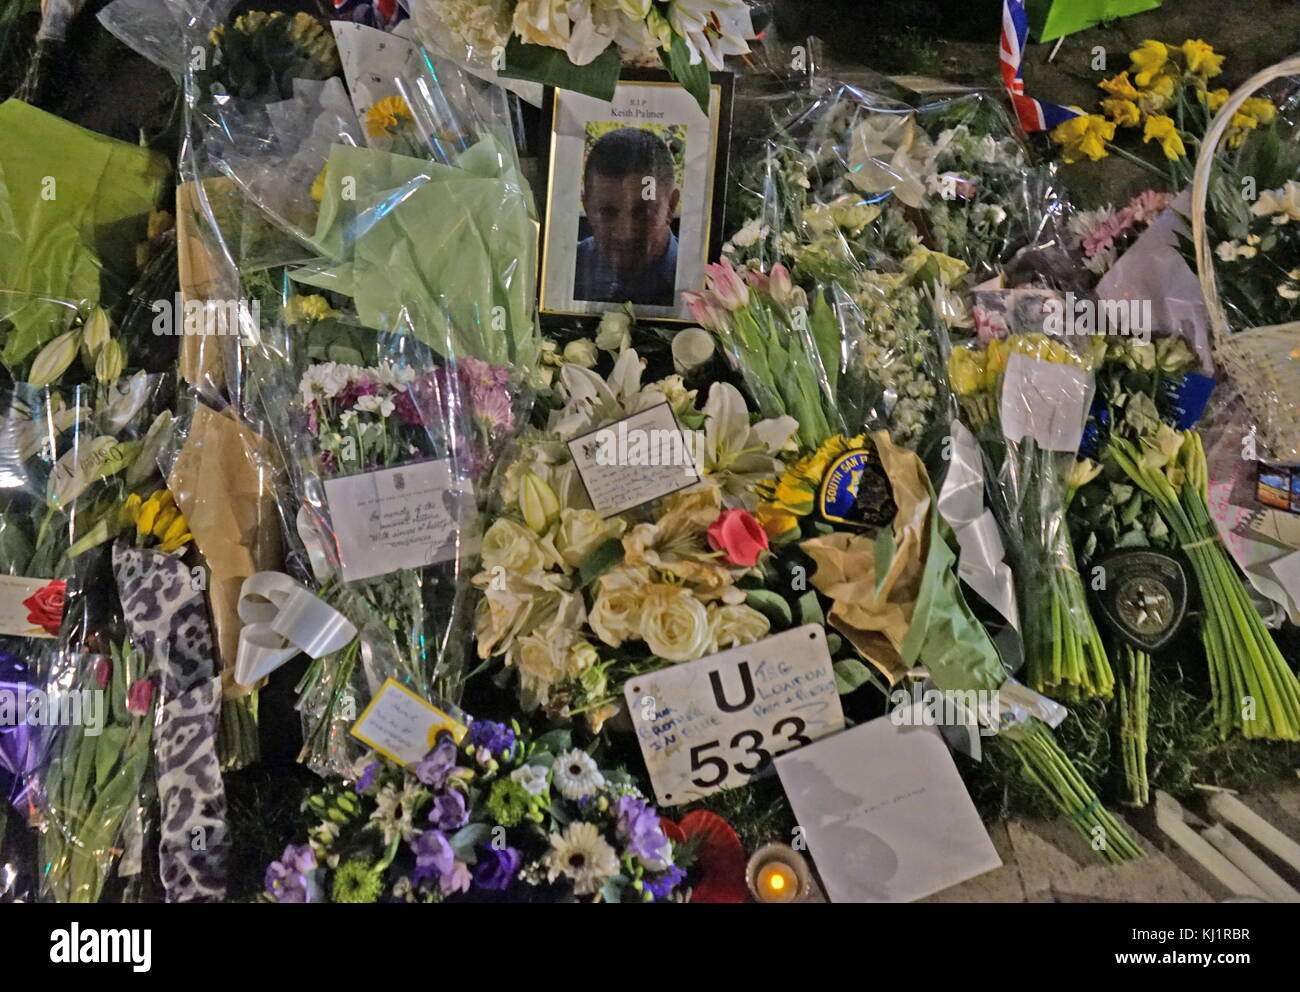 Fleurs et hommages décorer un portrait de l'agent de police assassiné, PC Keith Palmer, au Parlement, en face de vert le Parlement britannique à Londres, après le 21 mars 2017, une attaque terroriste, sur le pont de Westminster et le Parlement. L'attaquant de conduite d'un véhicule dans des piétons sur le pont de Westminster et une foule de personnes près de Banque D'Images